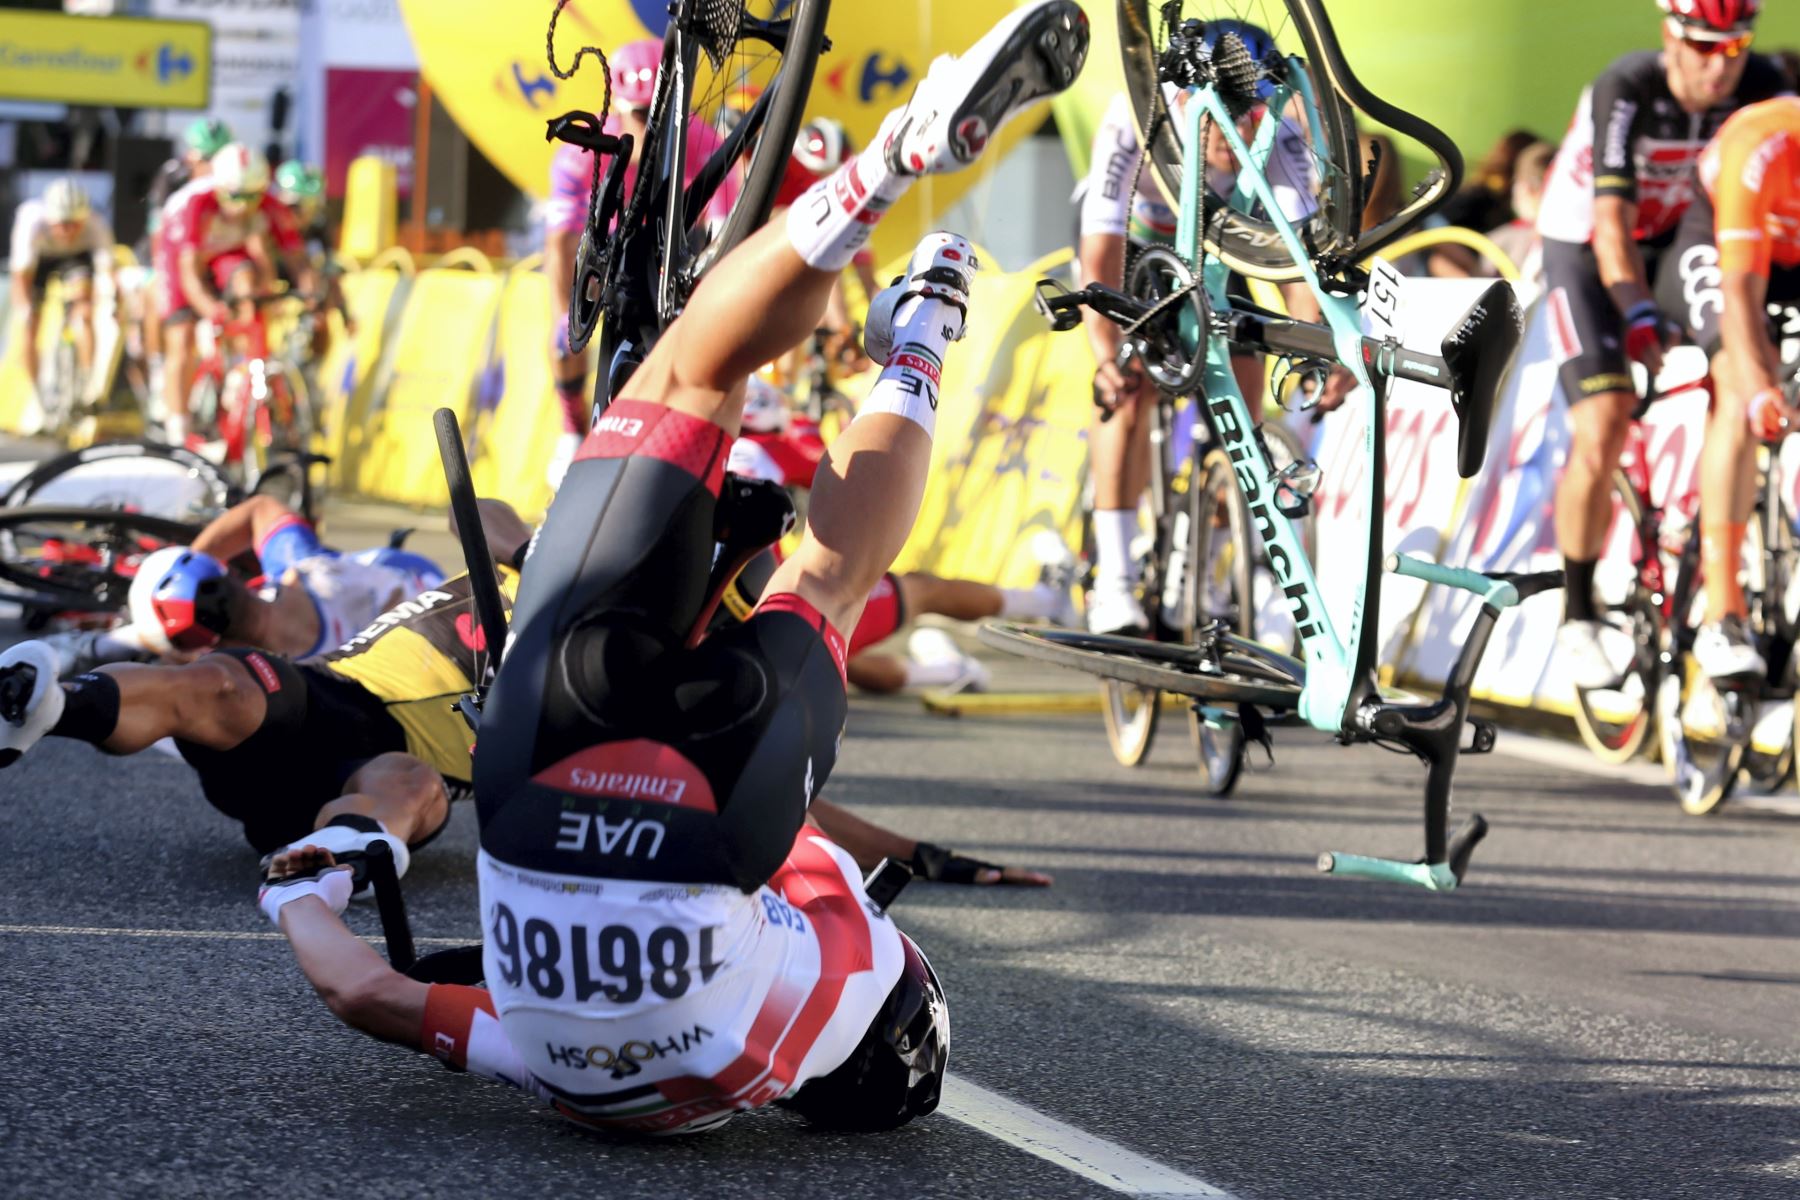 Los ciclistas caen cerca de la línea de meta durante la primera etapa de la carrera ciclista Tour de Pologne, más de 195.8 km entre Chorzow y Katowice, sur de Polonia.
Foto: AFP